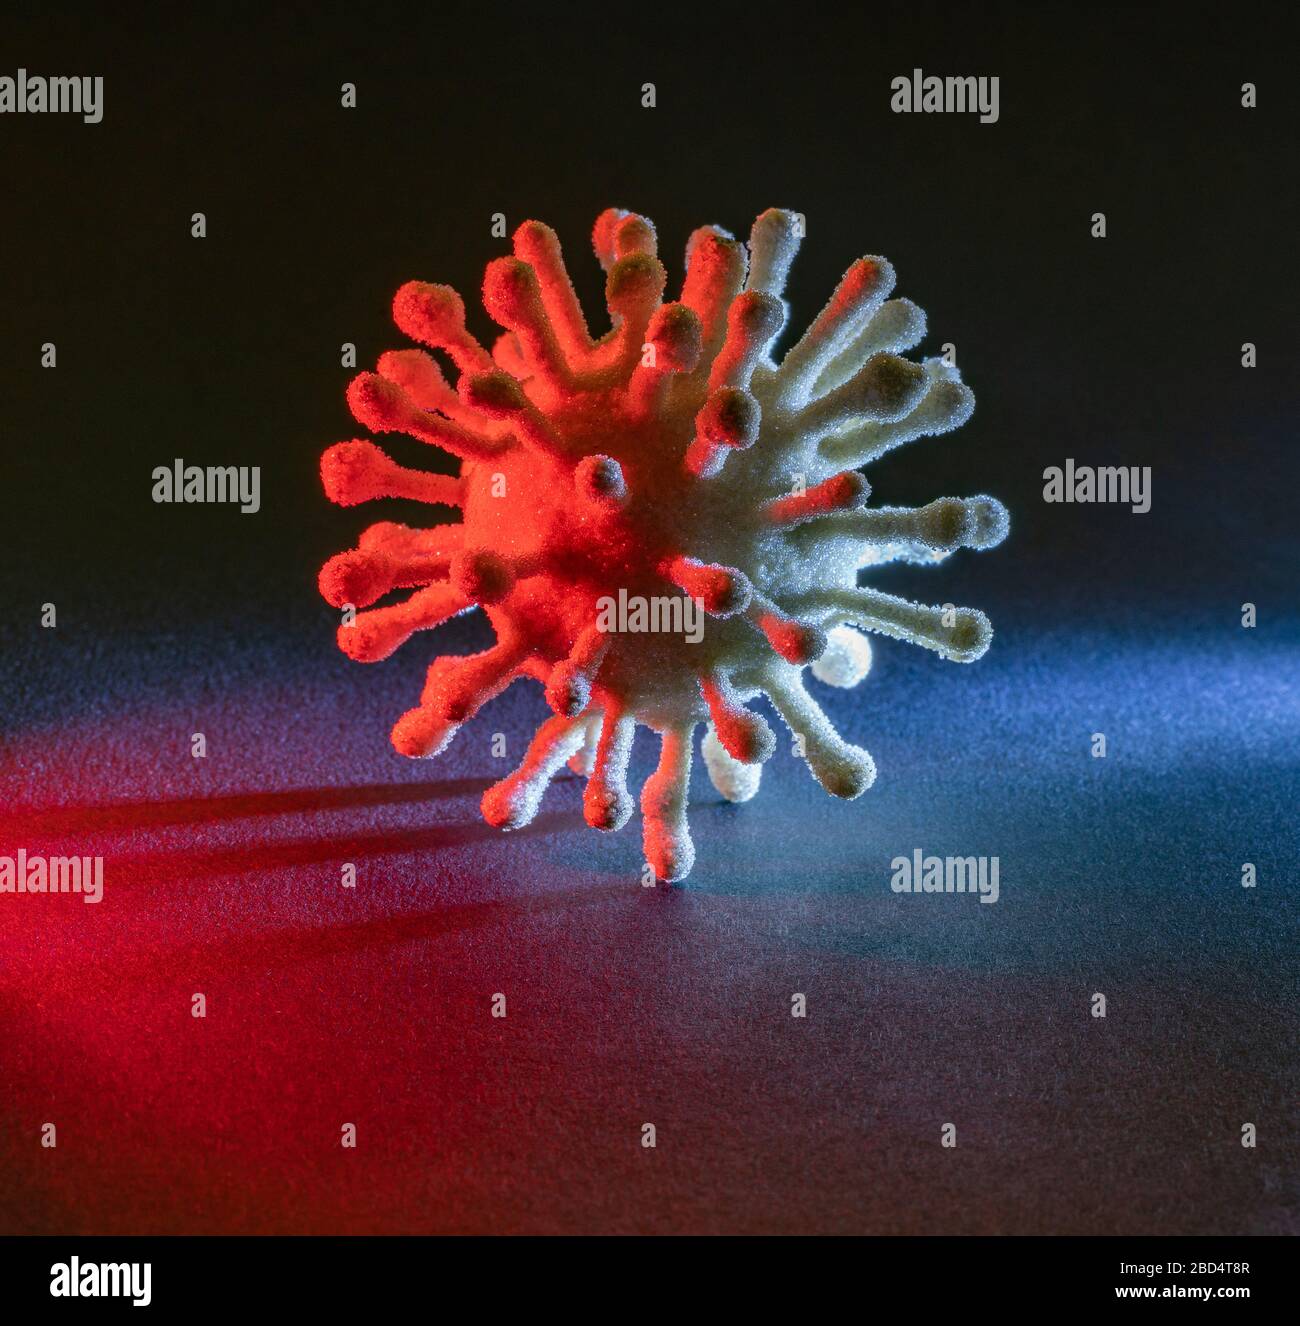 immagine di un colorato virus simbolico illuminato in scuro retro Foto Stock